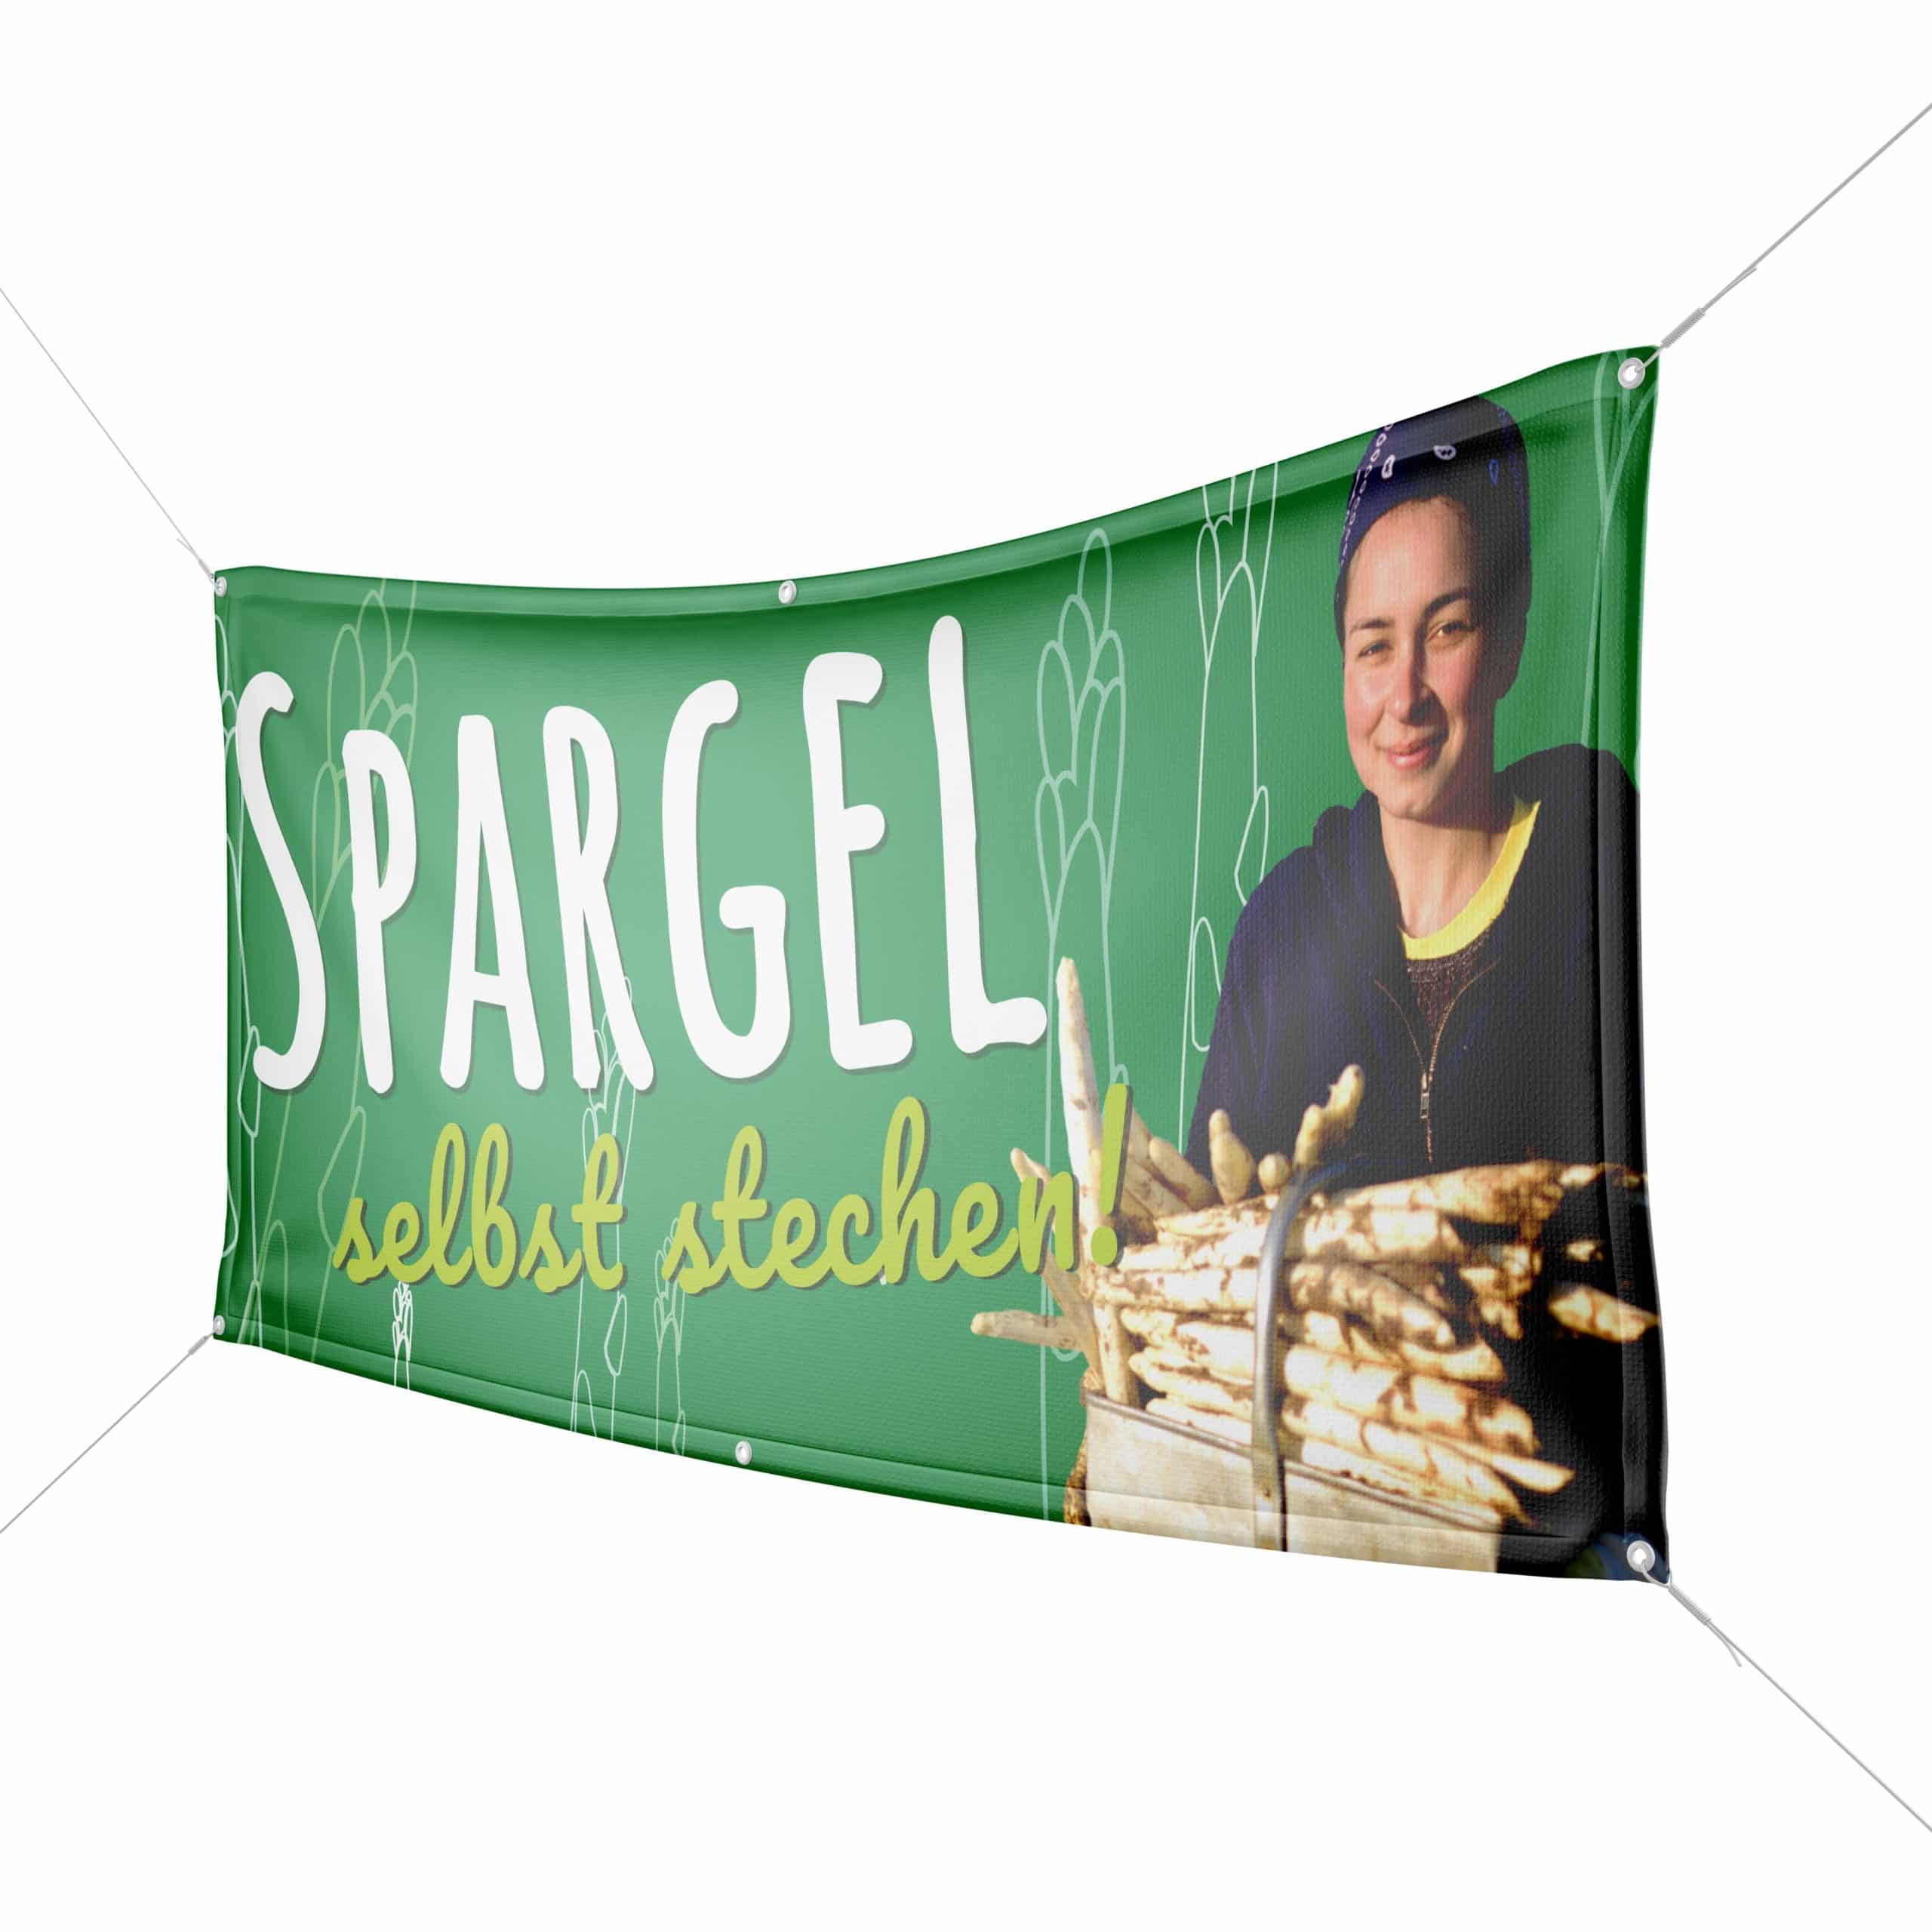 Grünes Banner mit Aufschrift "Spargel selbst stehen!" und Frau mit Spargel